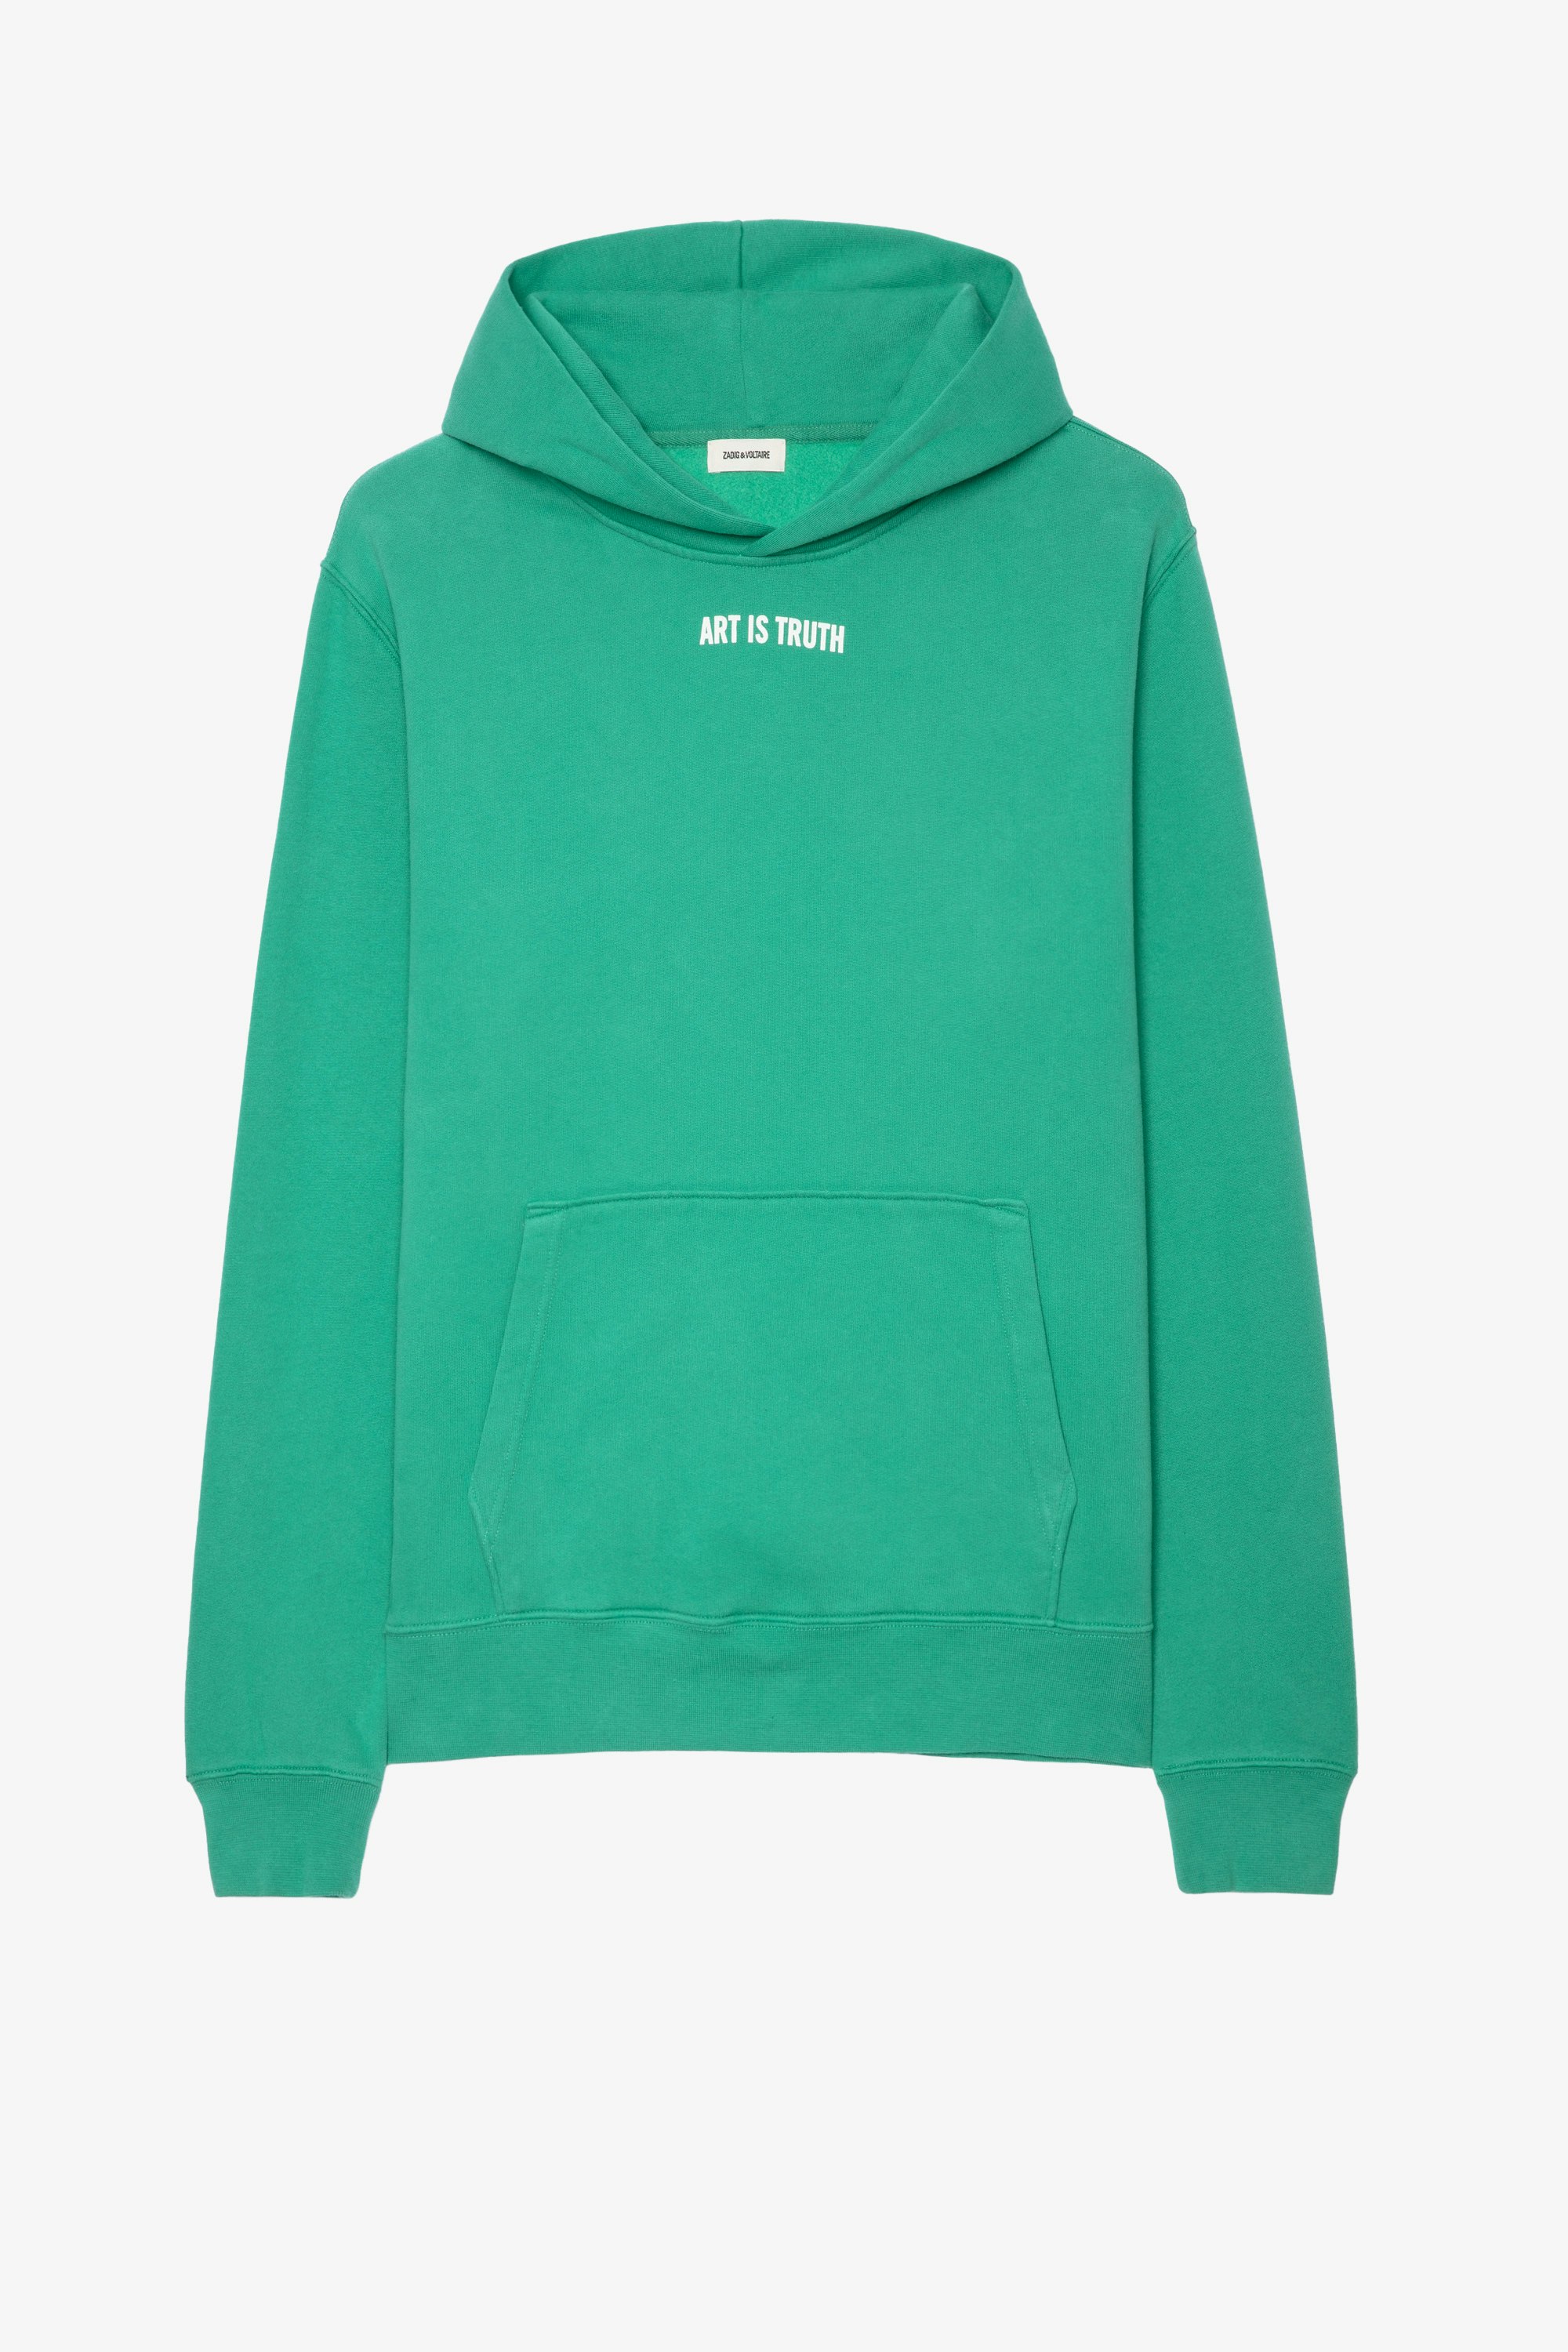 Sanchi Sweatshirt Men's 'Art is Truth' green cotton hoodie